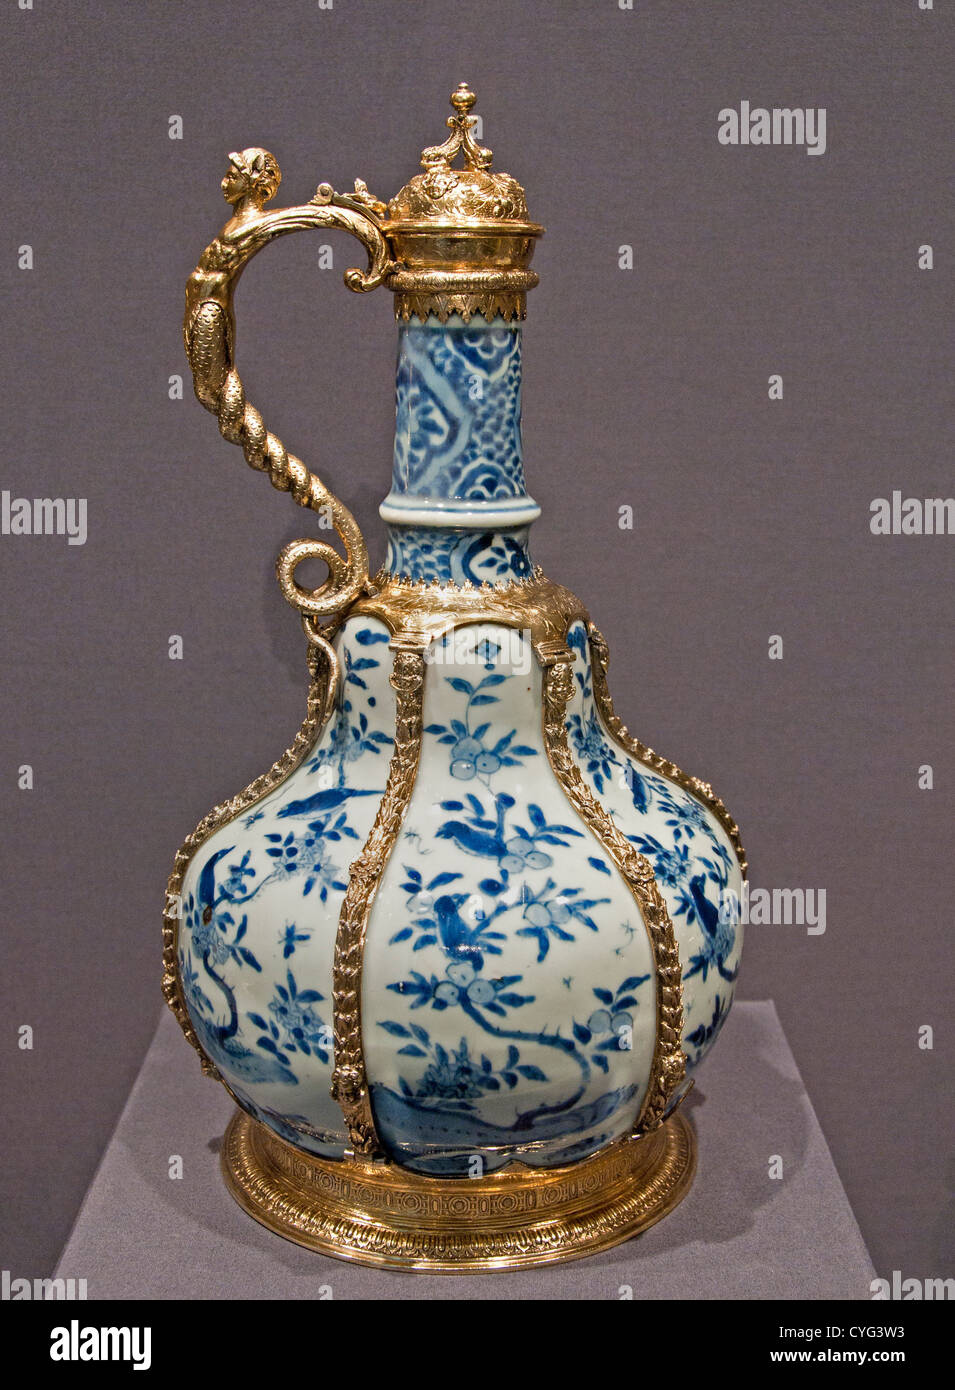 Ewer porcelanas Chinas Wanli período montajes Inglés 1585 Londres porcelana dorada plata 34,6 cm Foto de stock